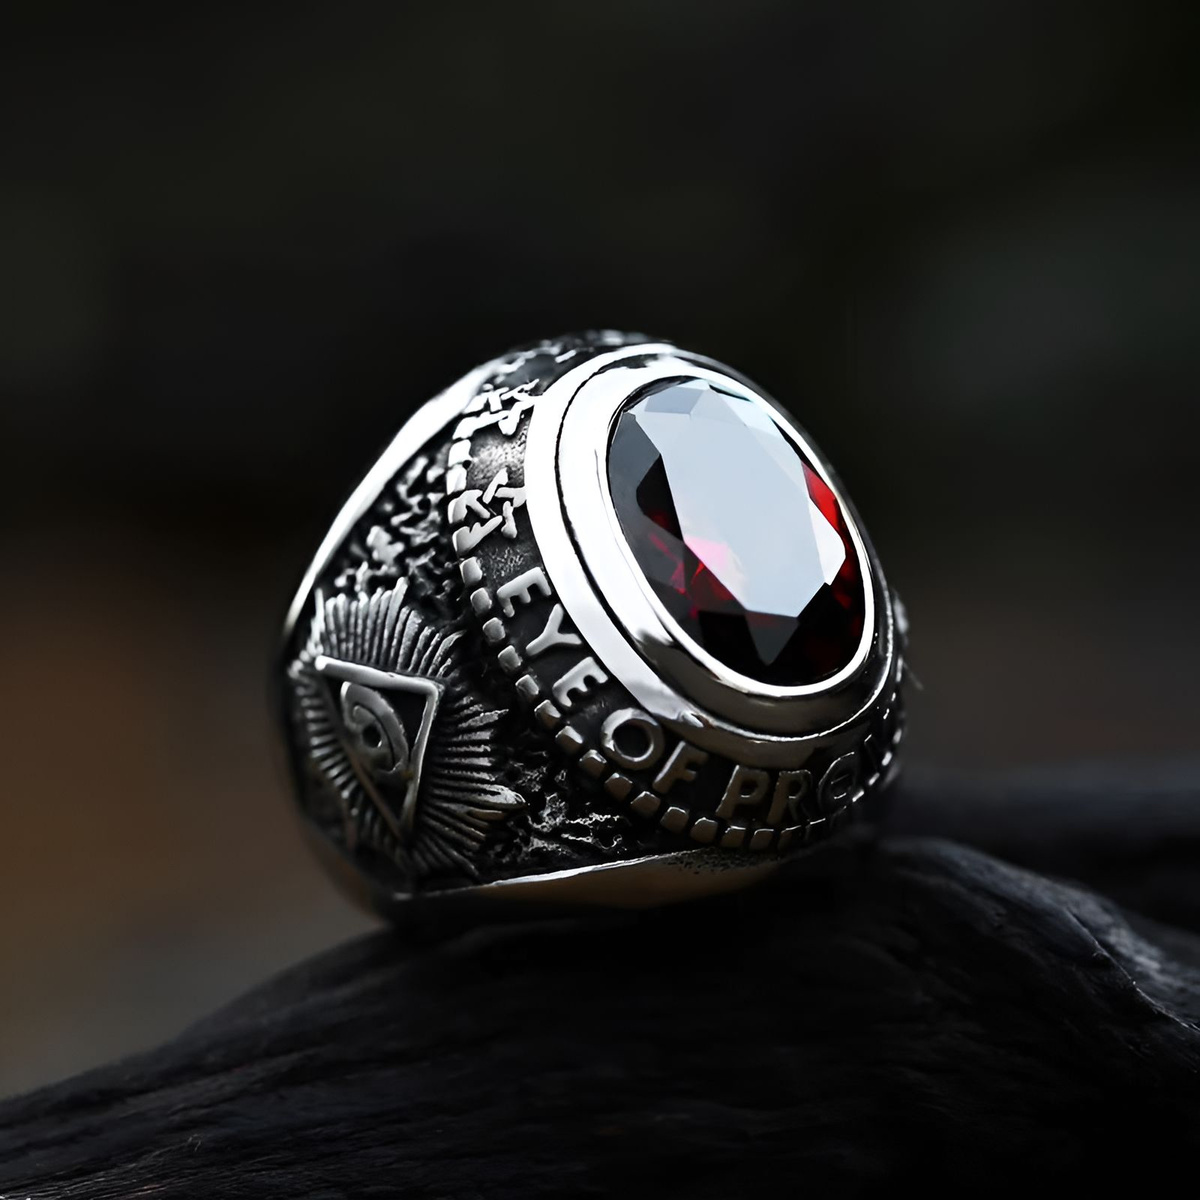 Кольцо рубин, кольцо гранат, кольцо с красным камнем, всевидящее око кольцо байкер, кольцо рубиновое, кольцо красный глаз дракона оберег, кольцо с рубином, перстень с рубином, перстень с красным камнем, фианит красный перстень с гранатом печатка с рубином